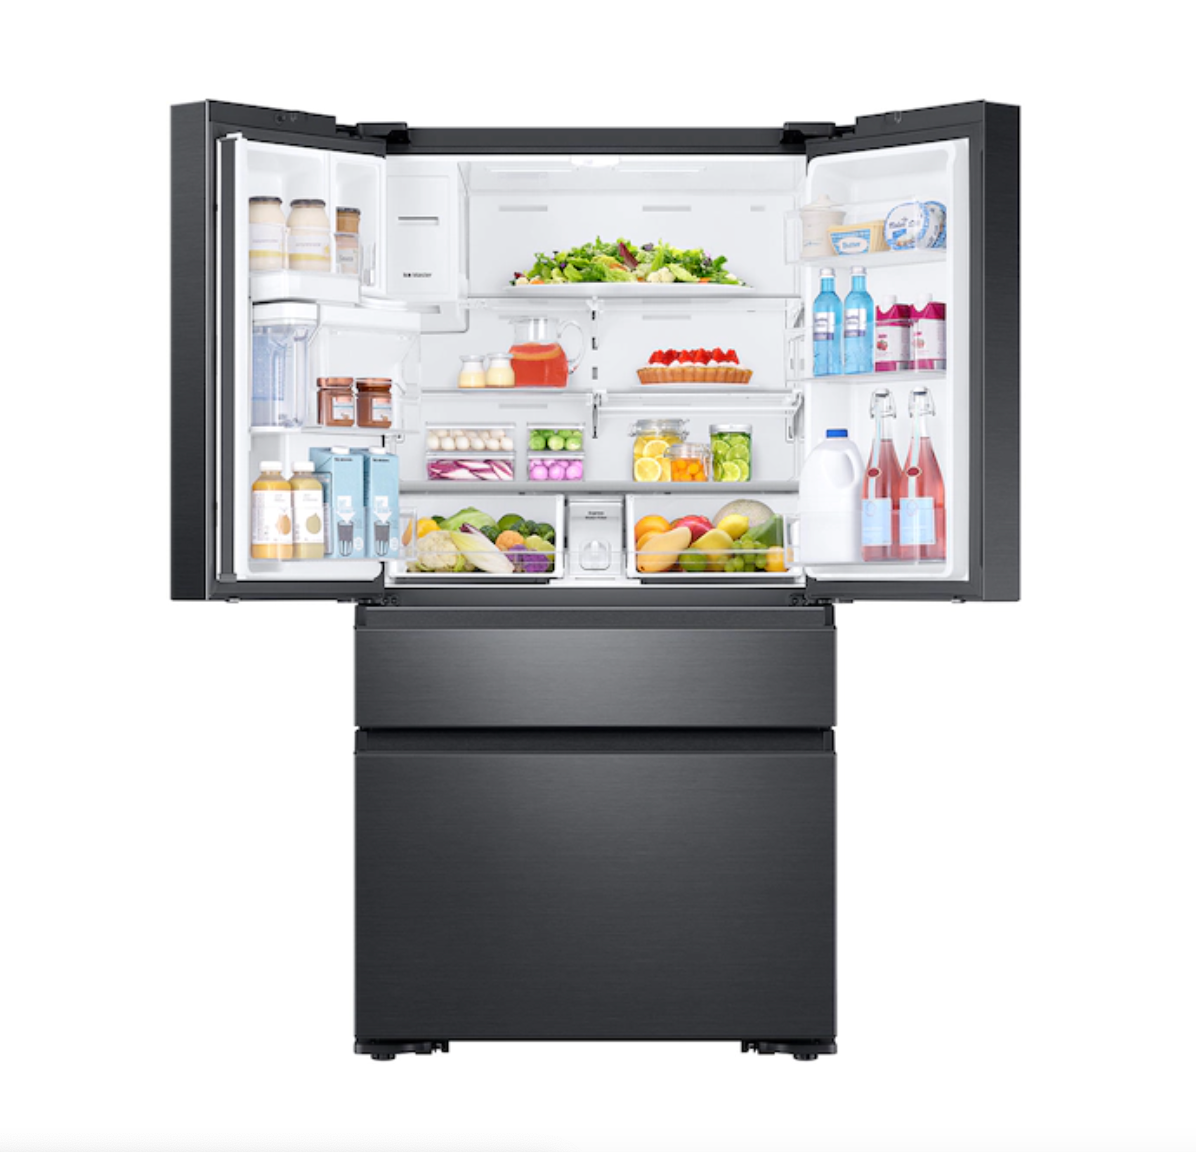 Samsung 23 cu. ft. Counter Depth 4-Door French Door Refrigerator